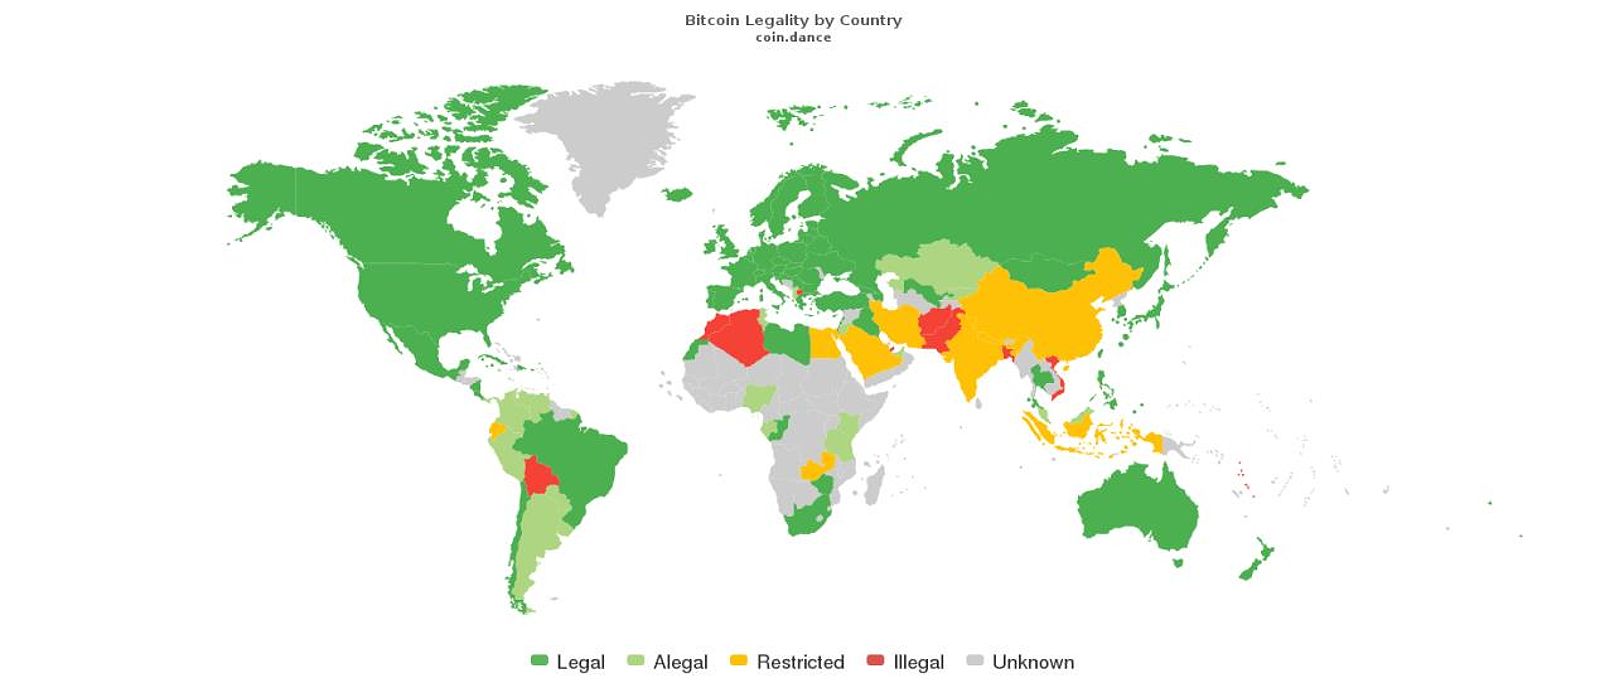 Biểu đồ pháp lý của Bitcoin trên thế giới